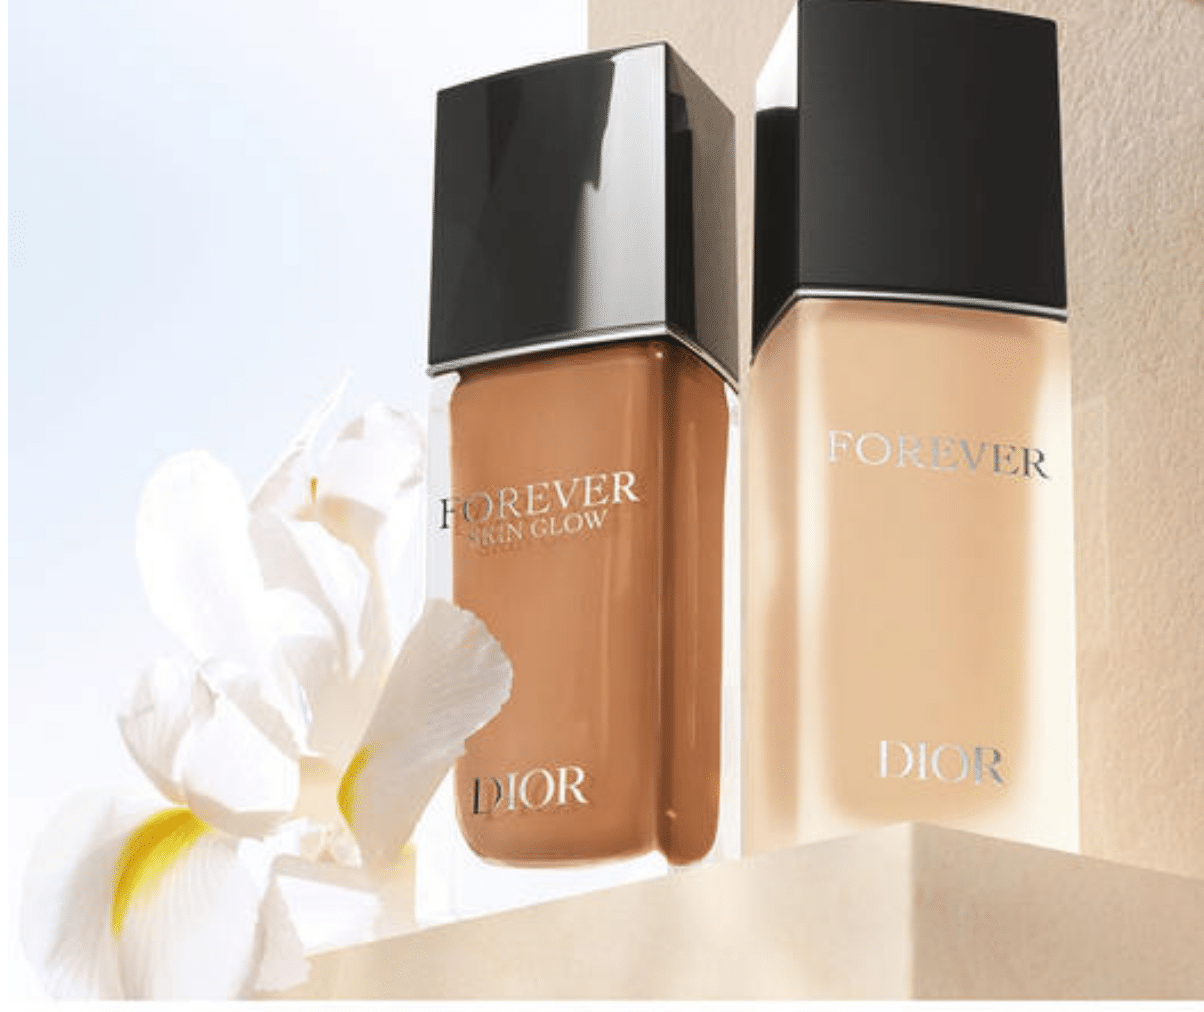 Échantillon gratuit de fond de teint Forever Dior avec le fini de votre choix (mat ou éclat)